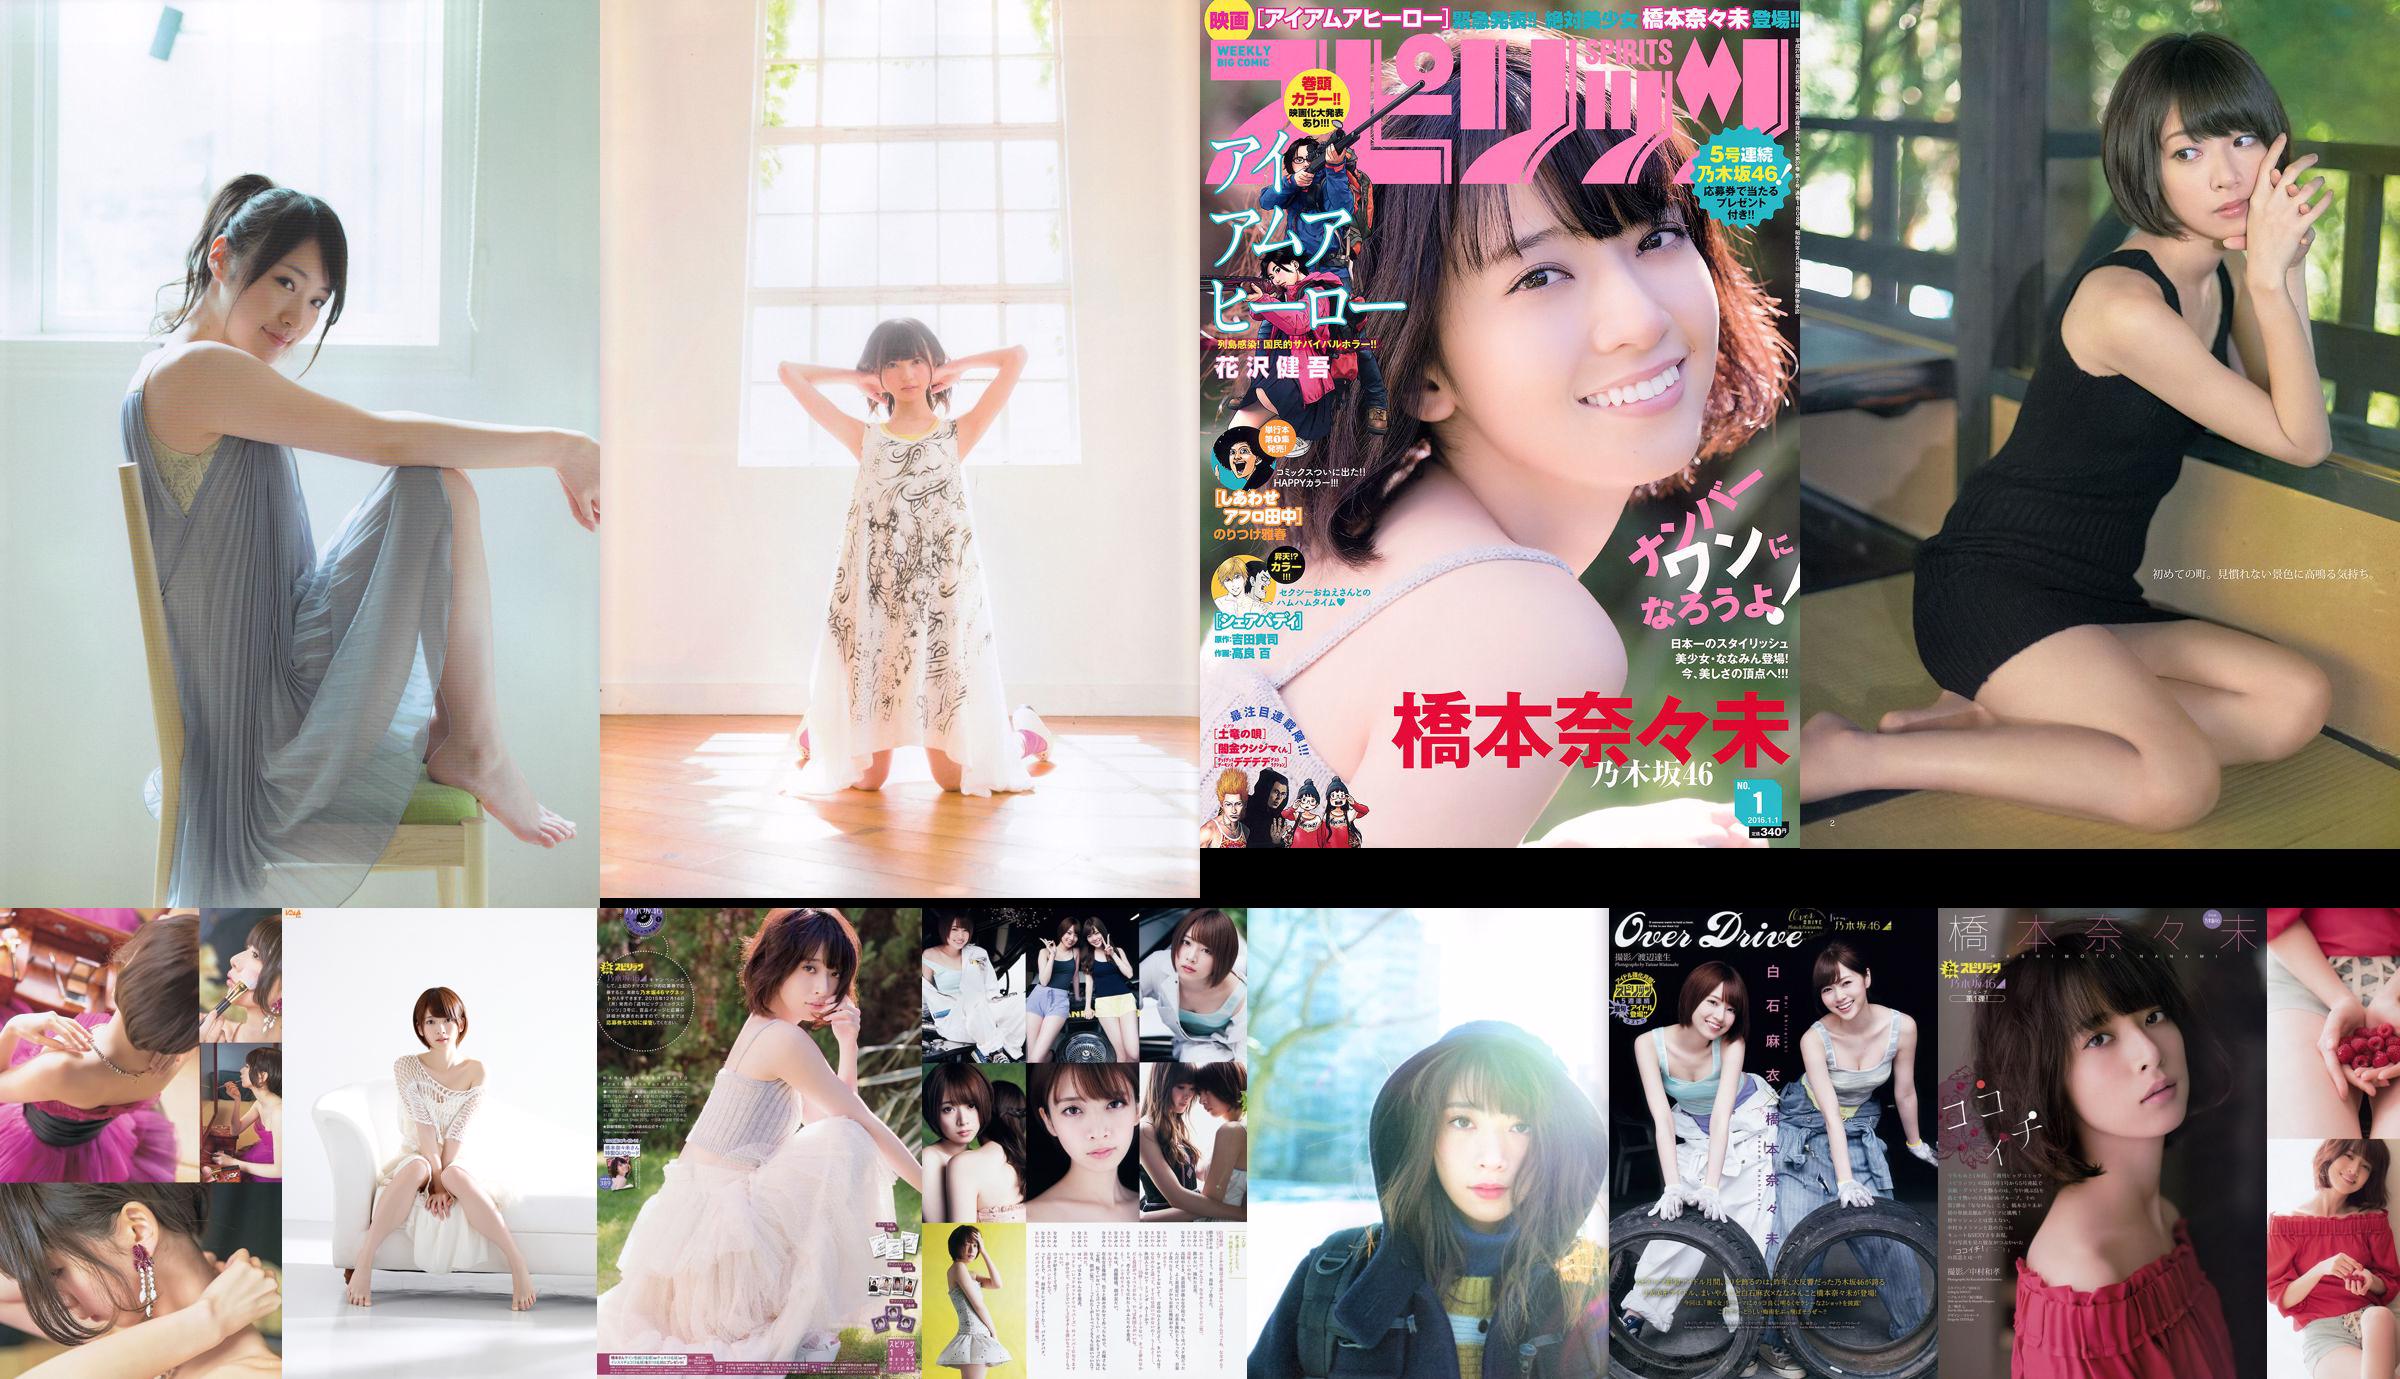 Hashimoto Nasumi Momokawa Haruka Private Ebisu Junior High School [Weekly Young Jump] 2013 No.51 Photo Magazine No.59efbb Page 3